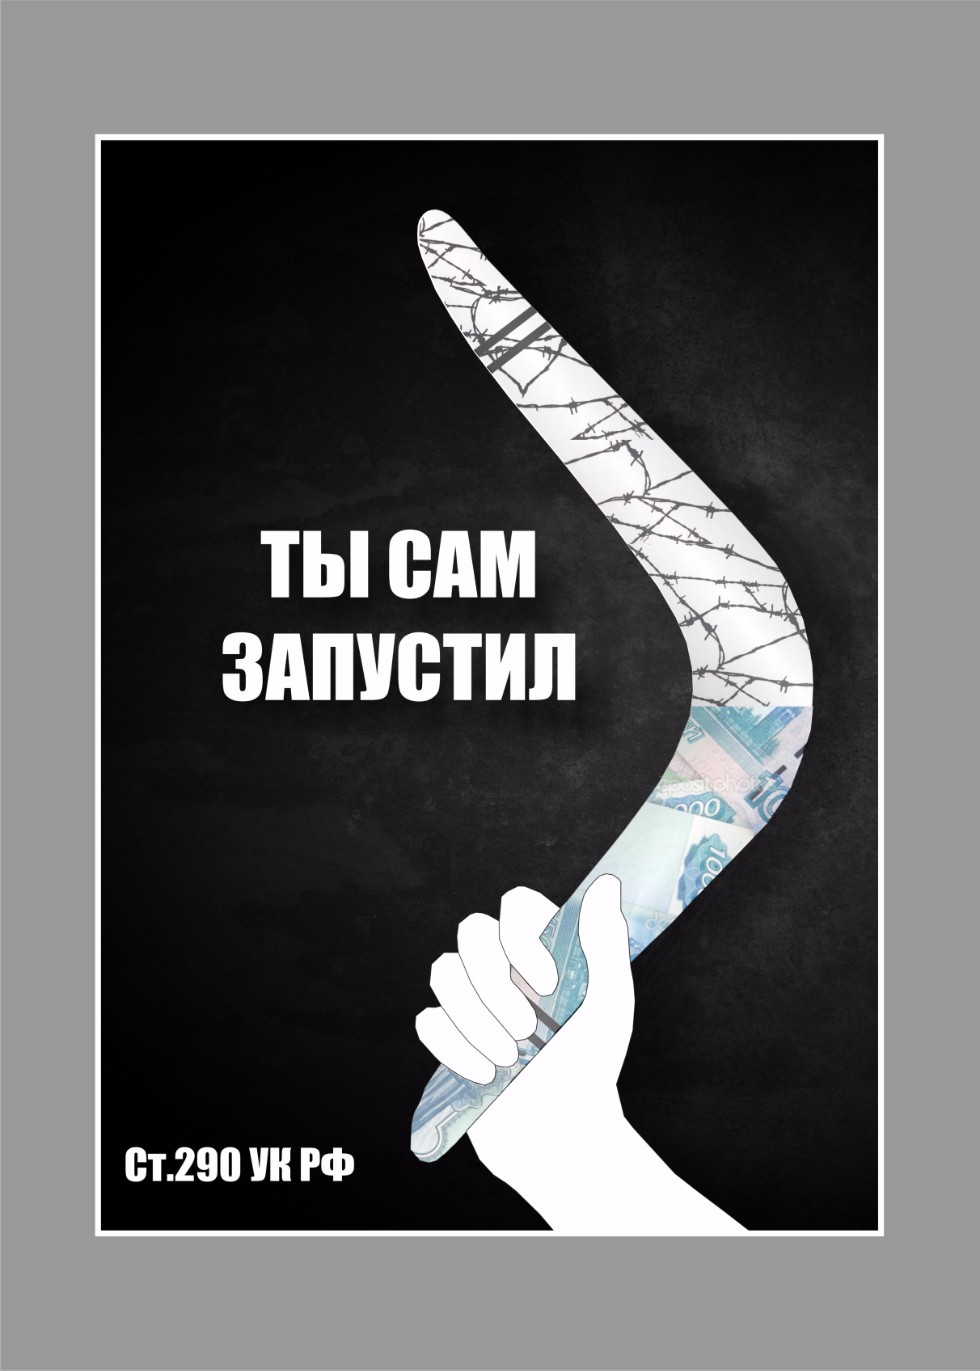 Студенческие плакаты в сфере противодействия коррупции ,Противодействие коррупции, студенчество